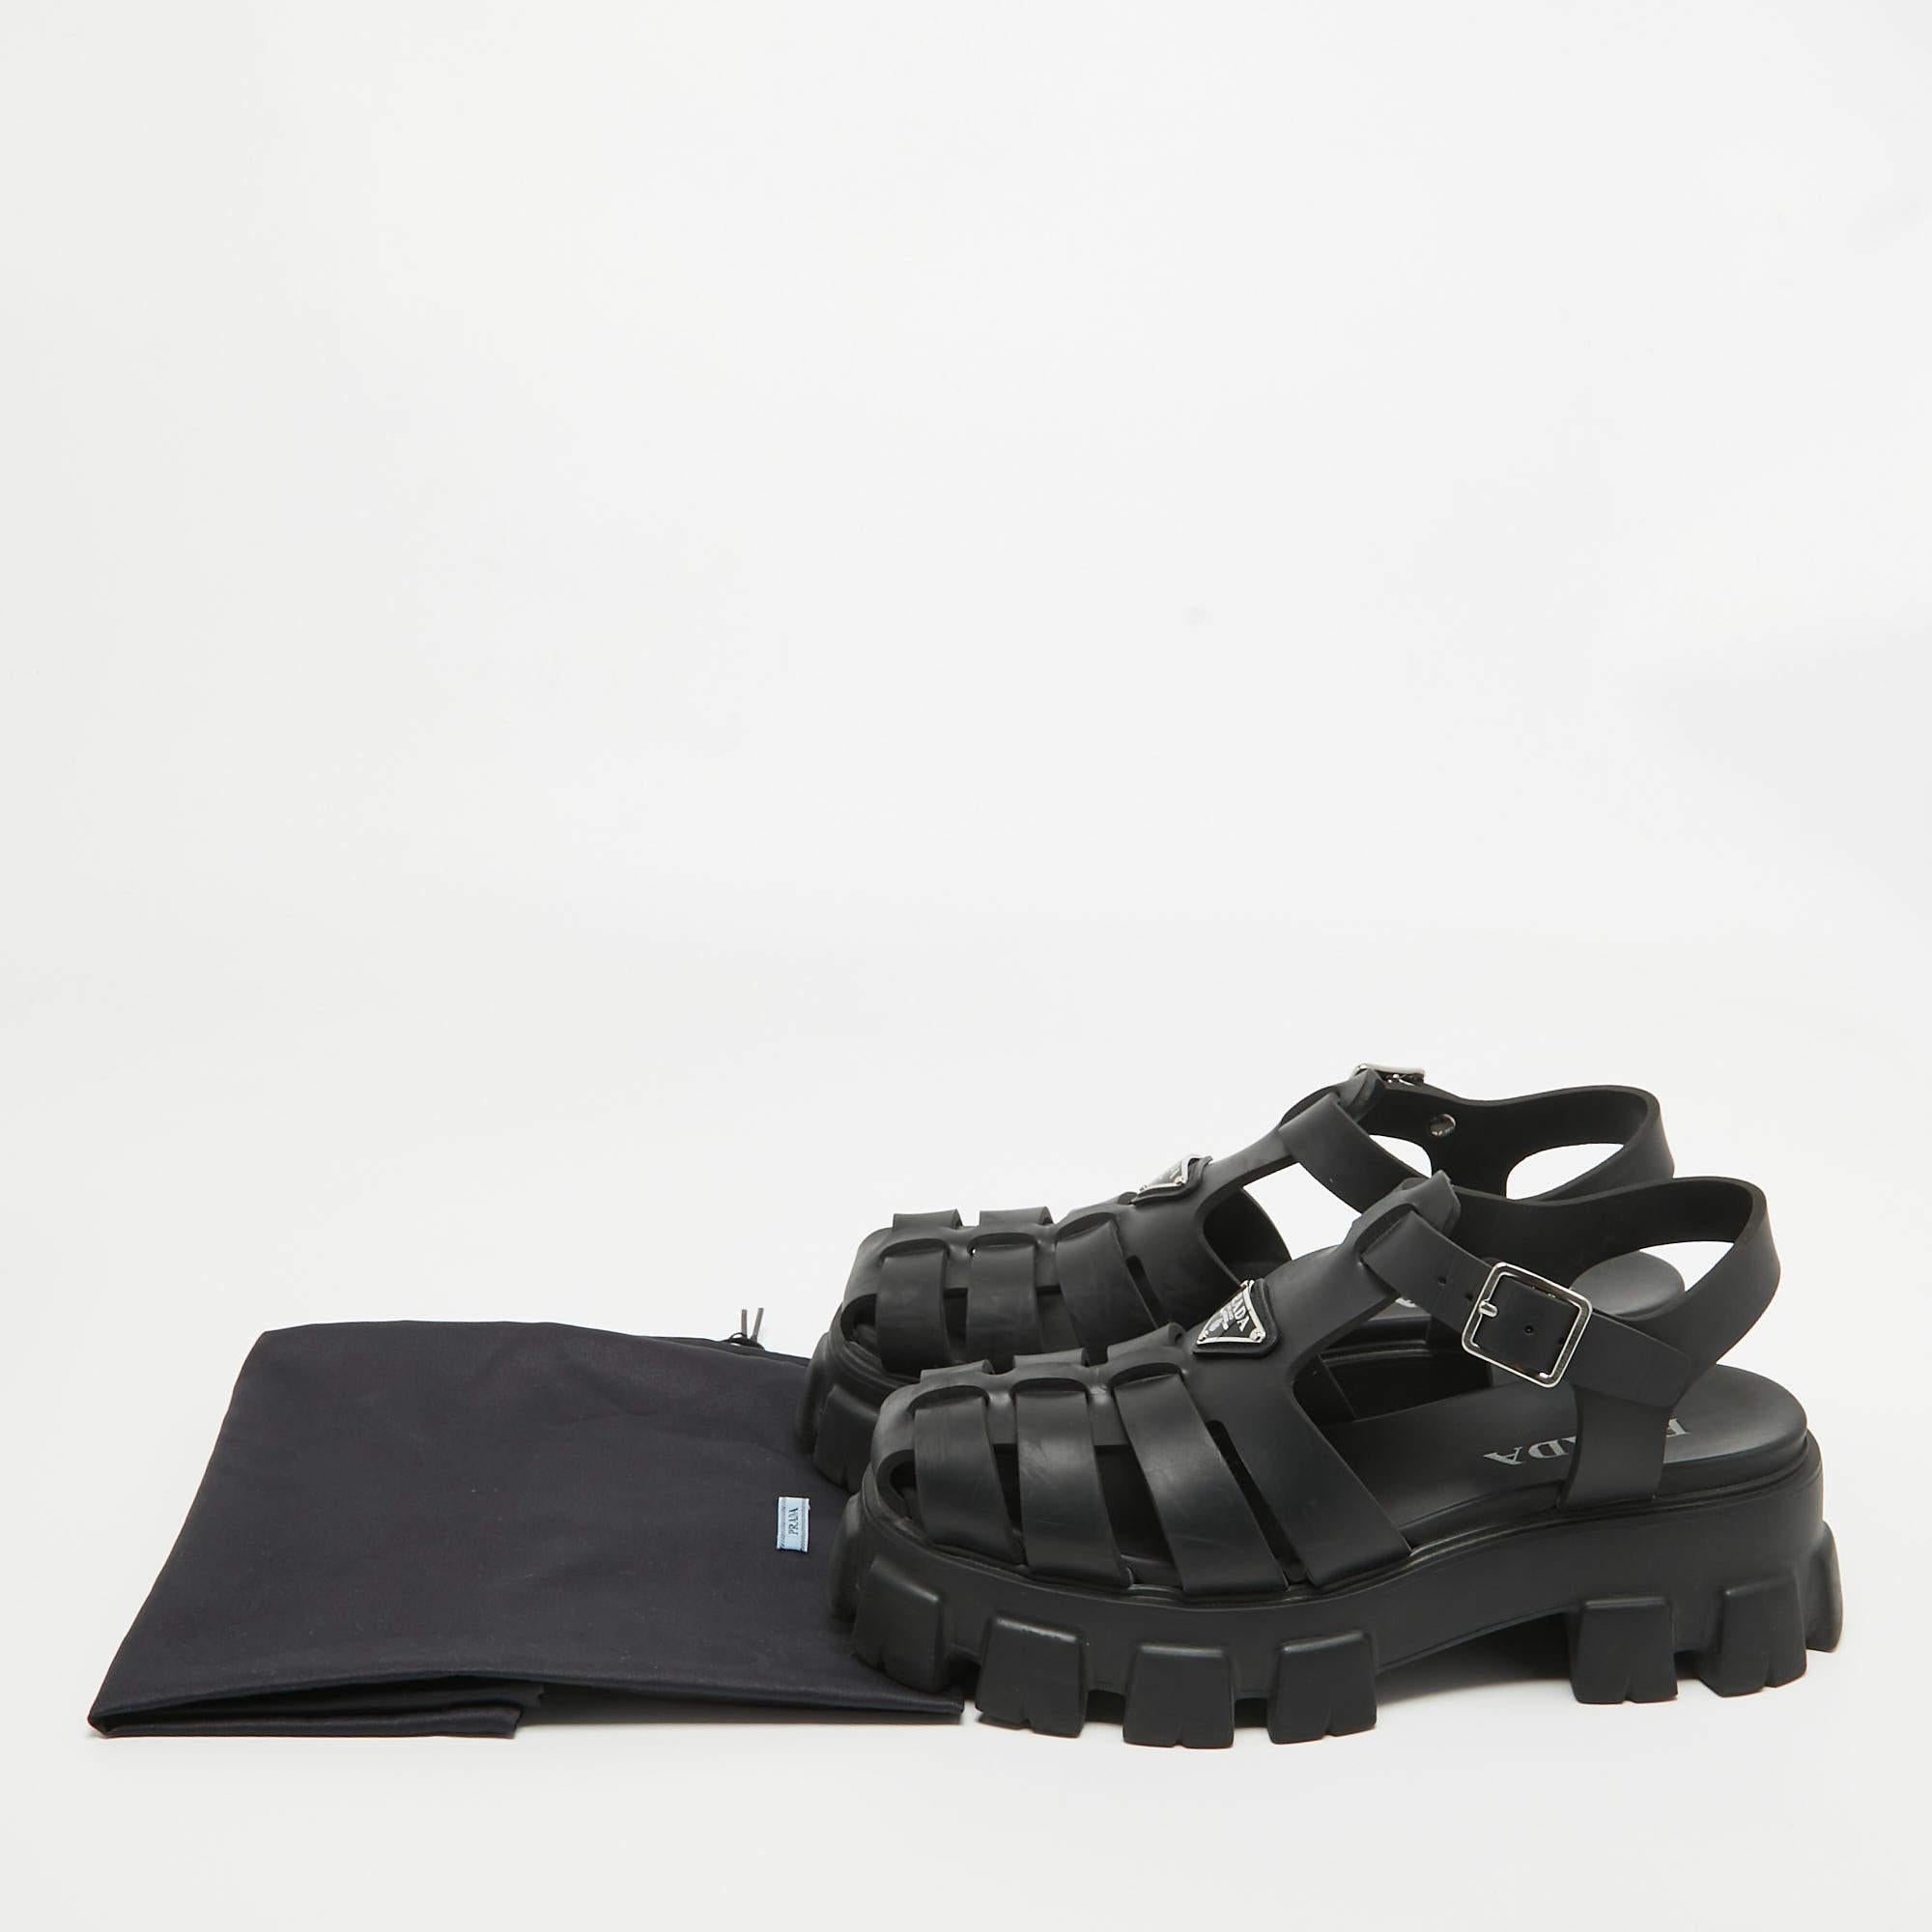 Prada Black Rubber Platform Ankle Strap Sandals Size 41 5